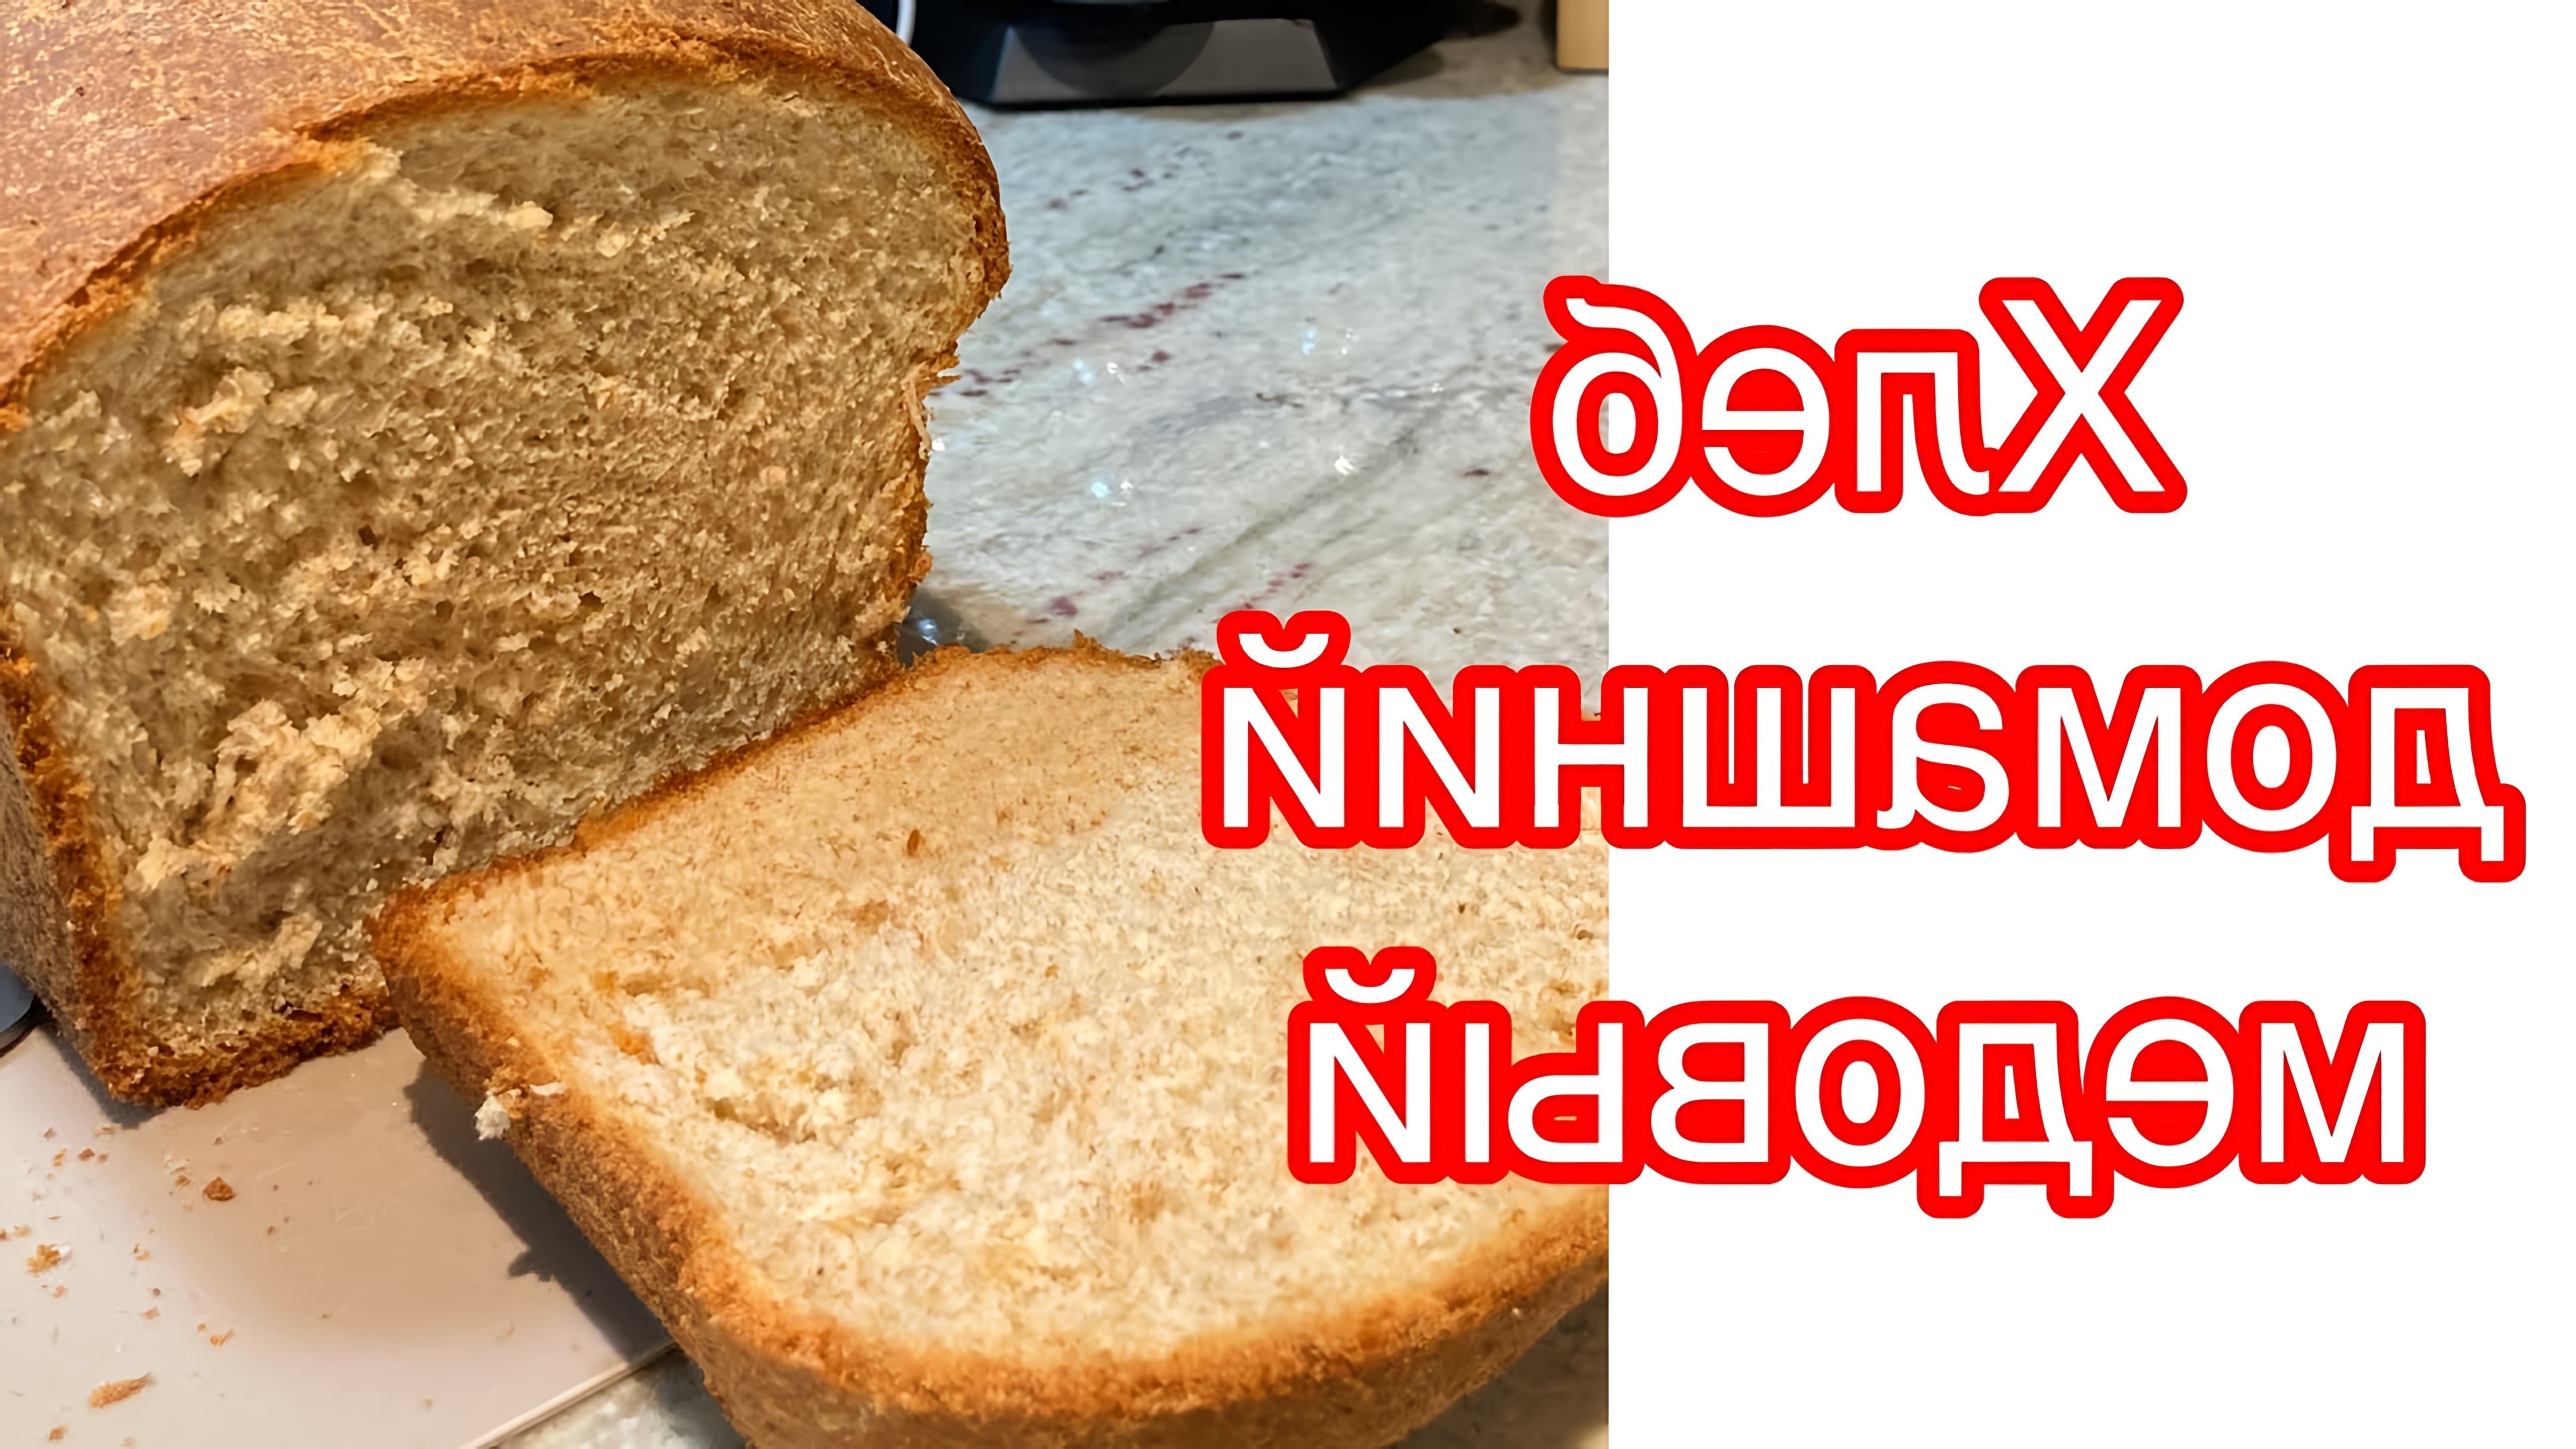 В этом видео-ролике ЯСемья делится рецептом домашнего медового хлеба из цельнозерновой муки